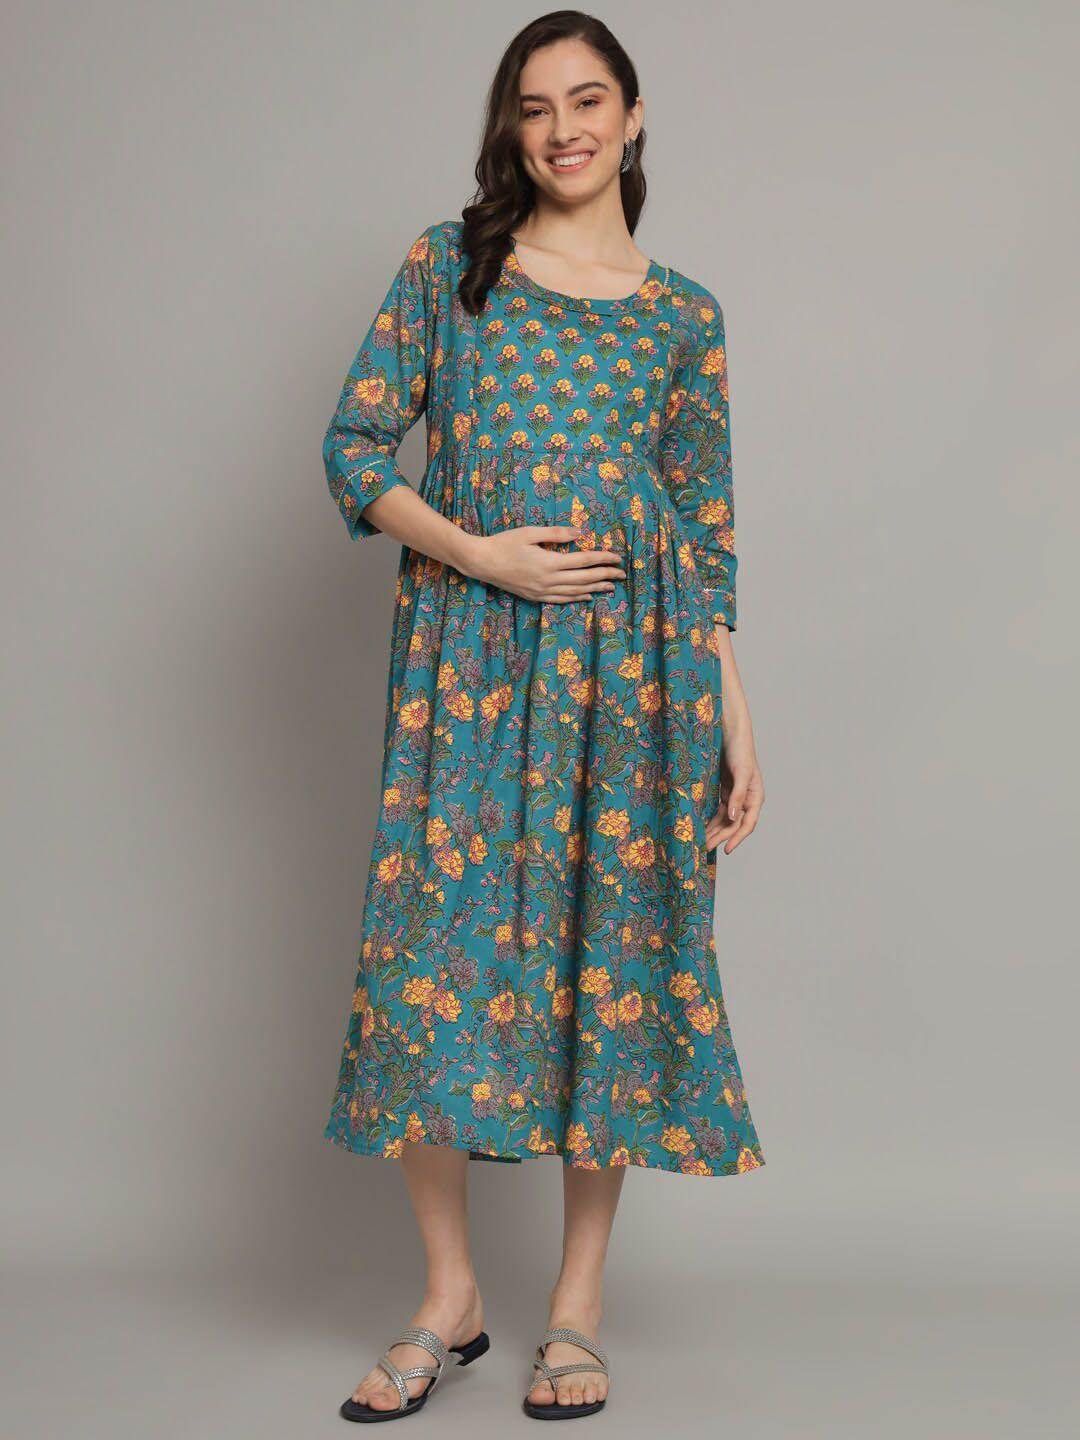 kalini teal floral print maternity a-line midi dress